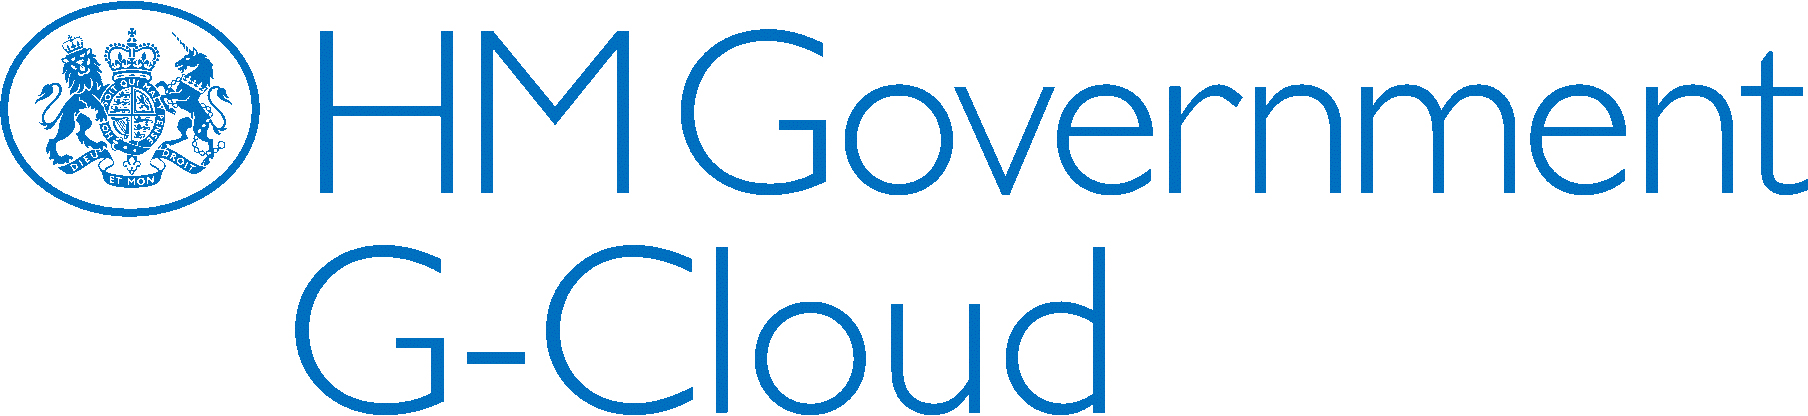 hm-government-g-cloud.webp